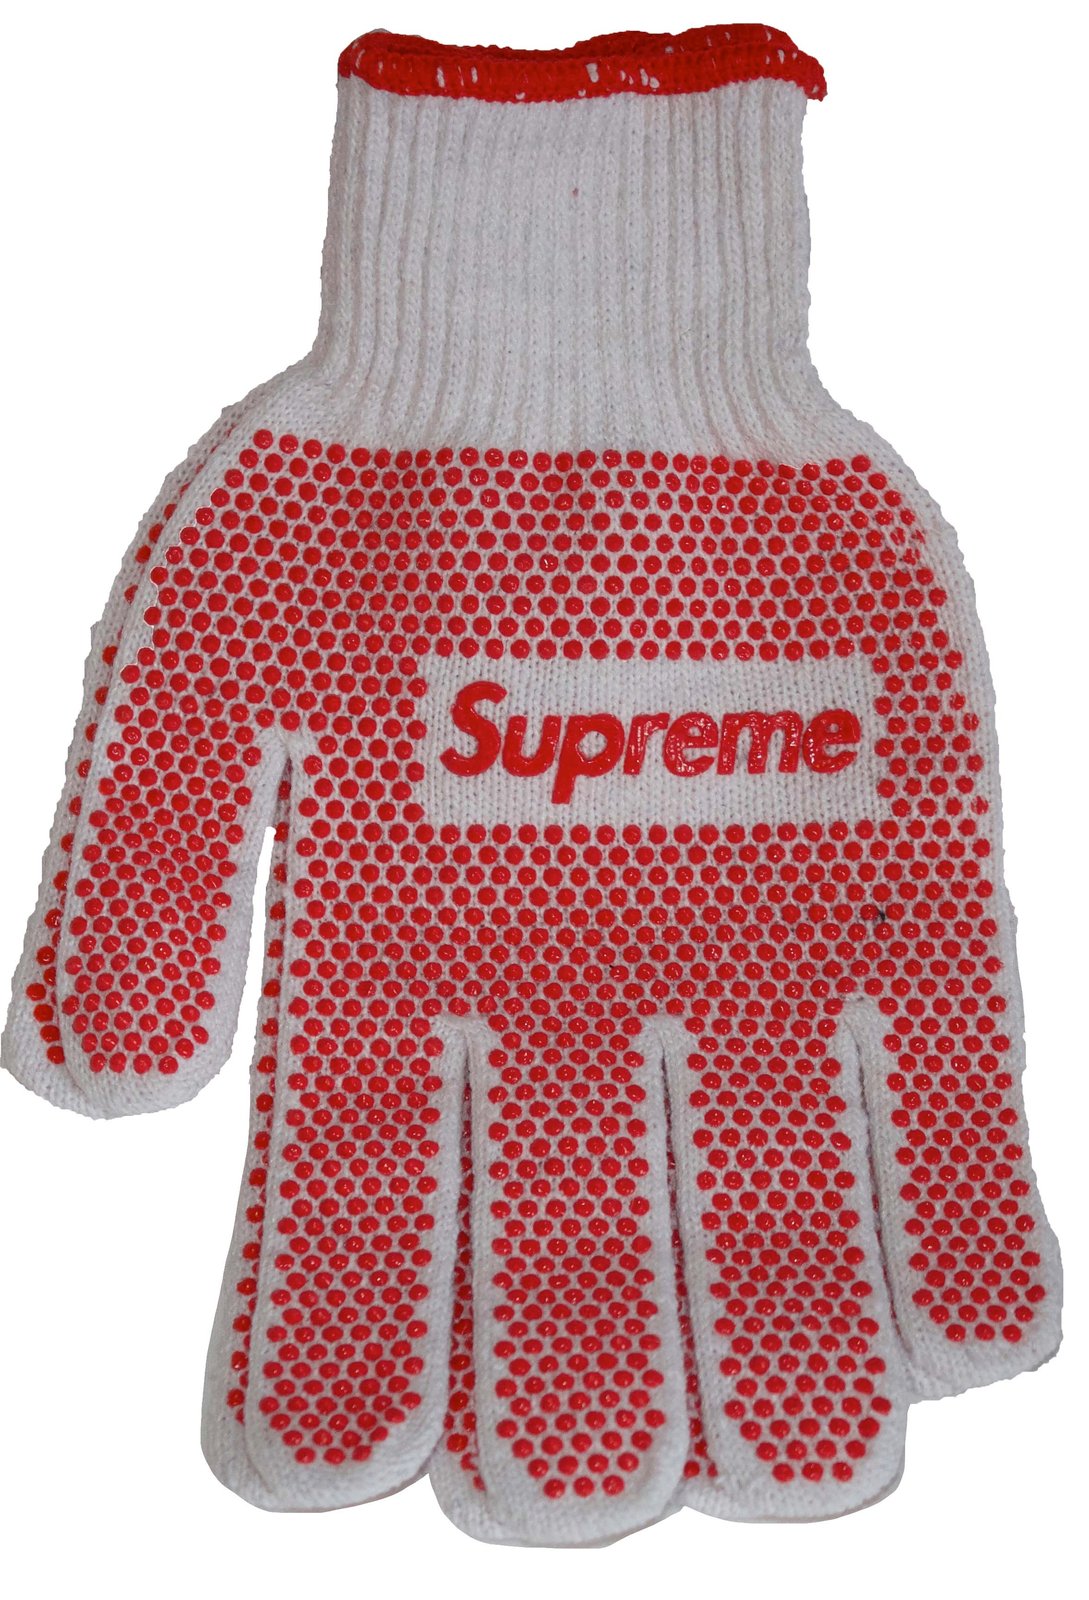 Supreme Work Gloves